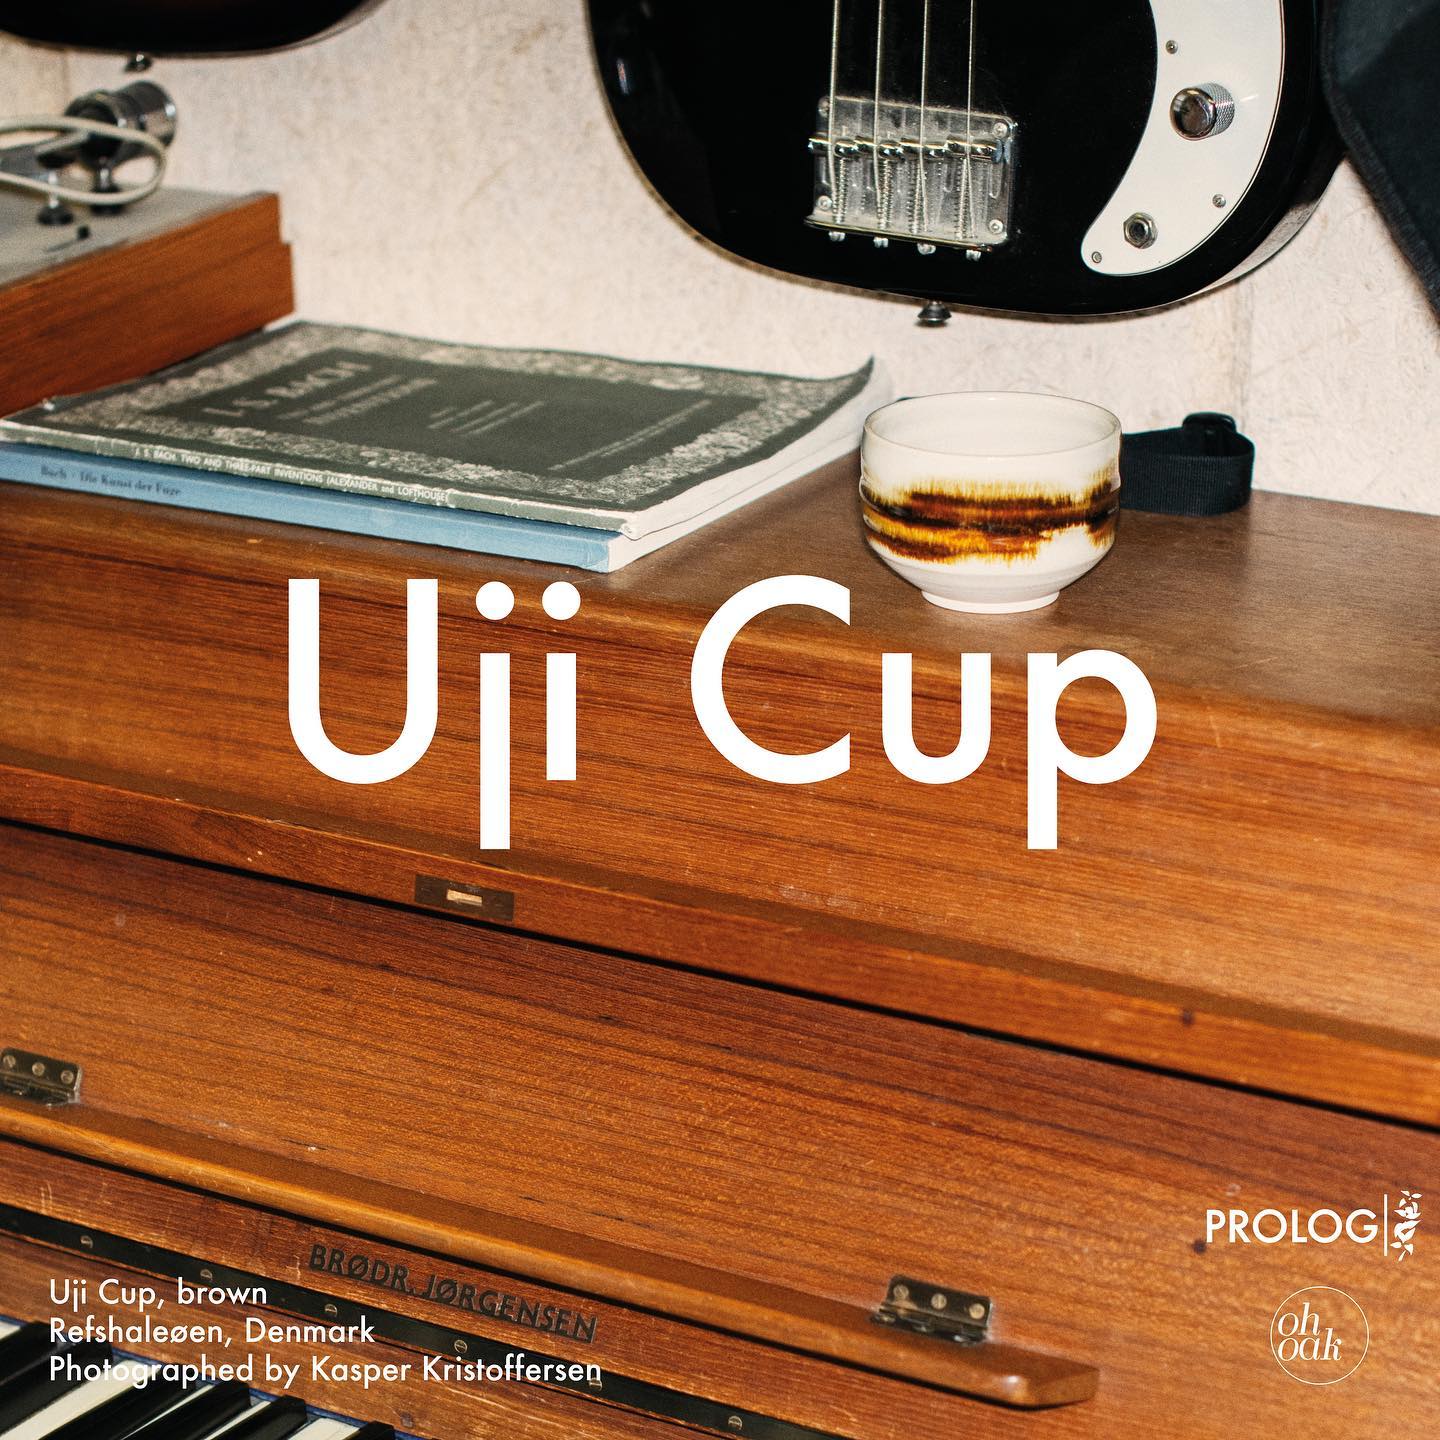 Oh Oak / uji cup